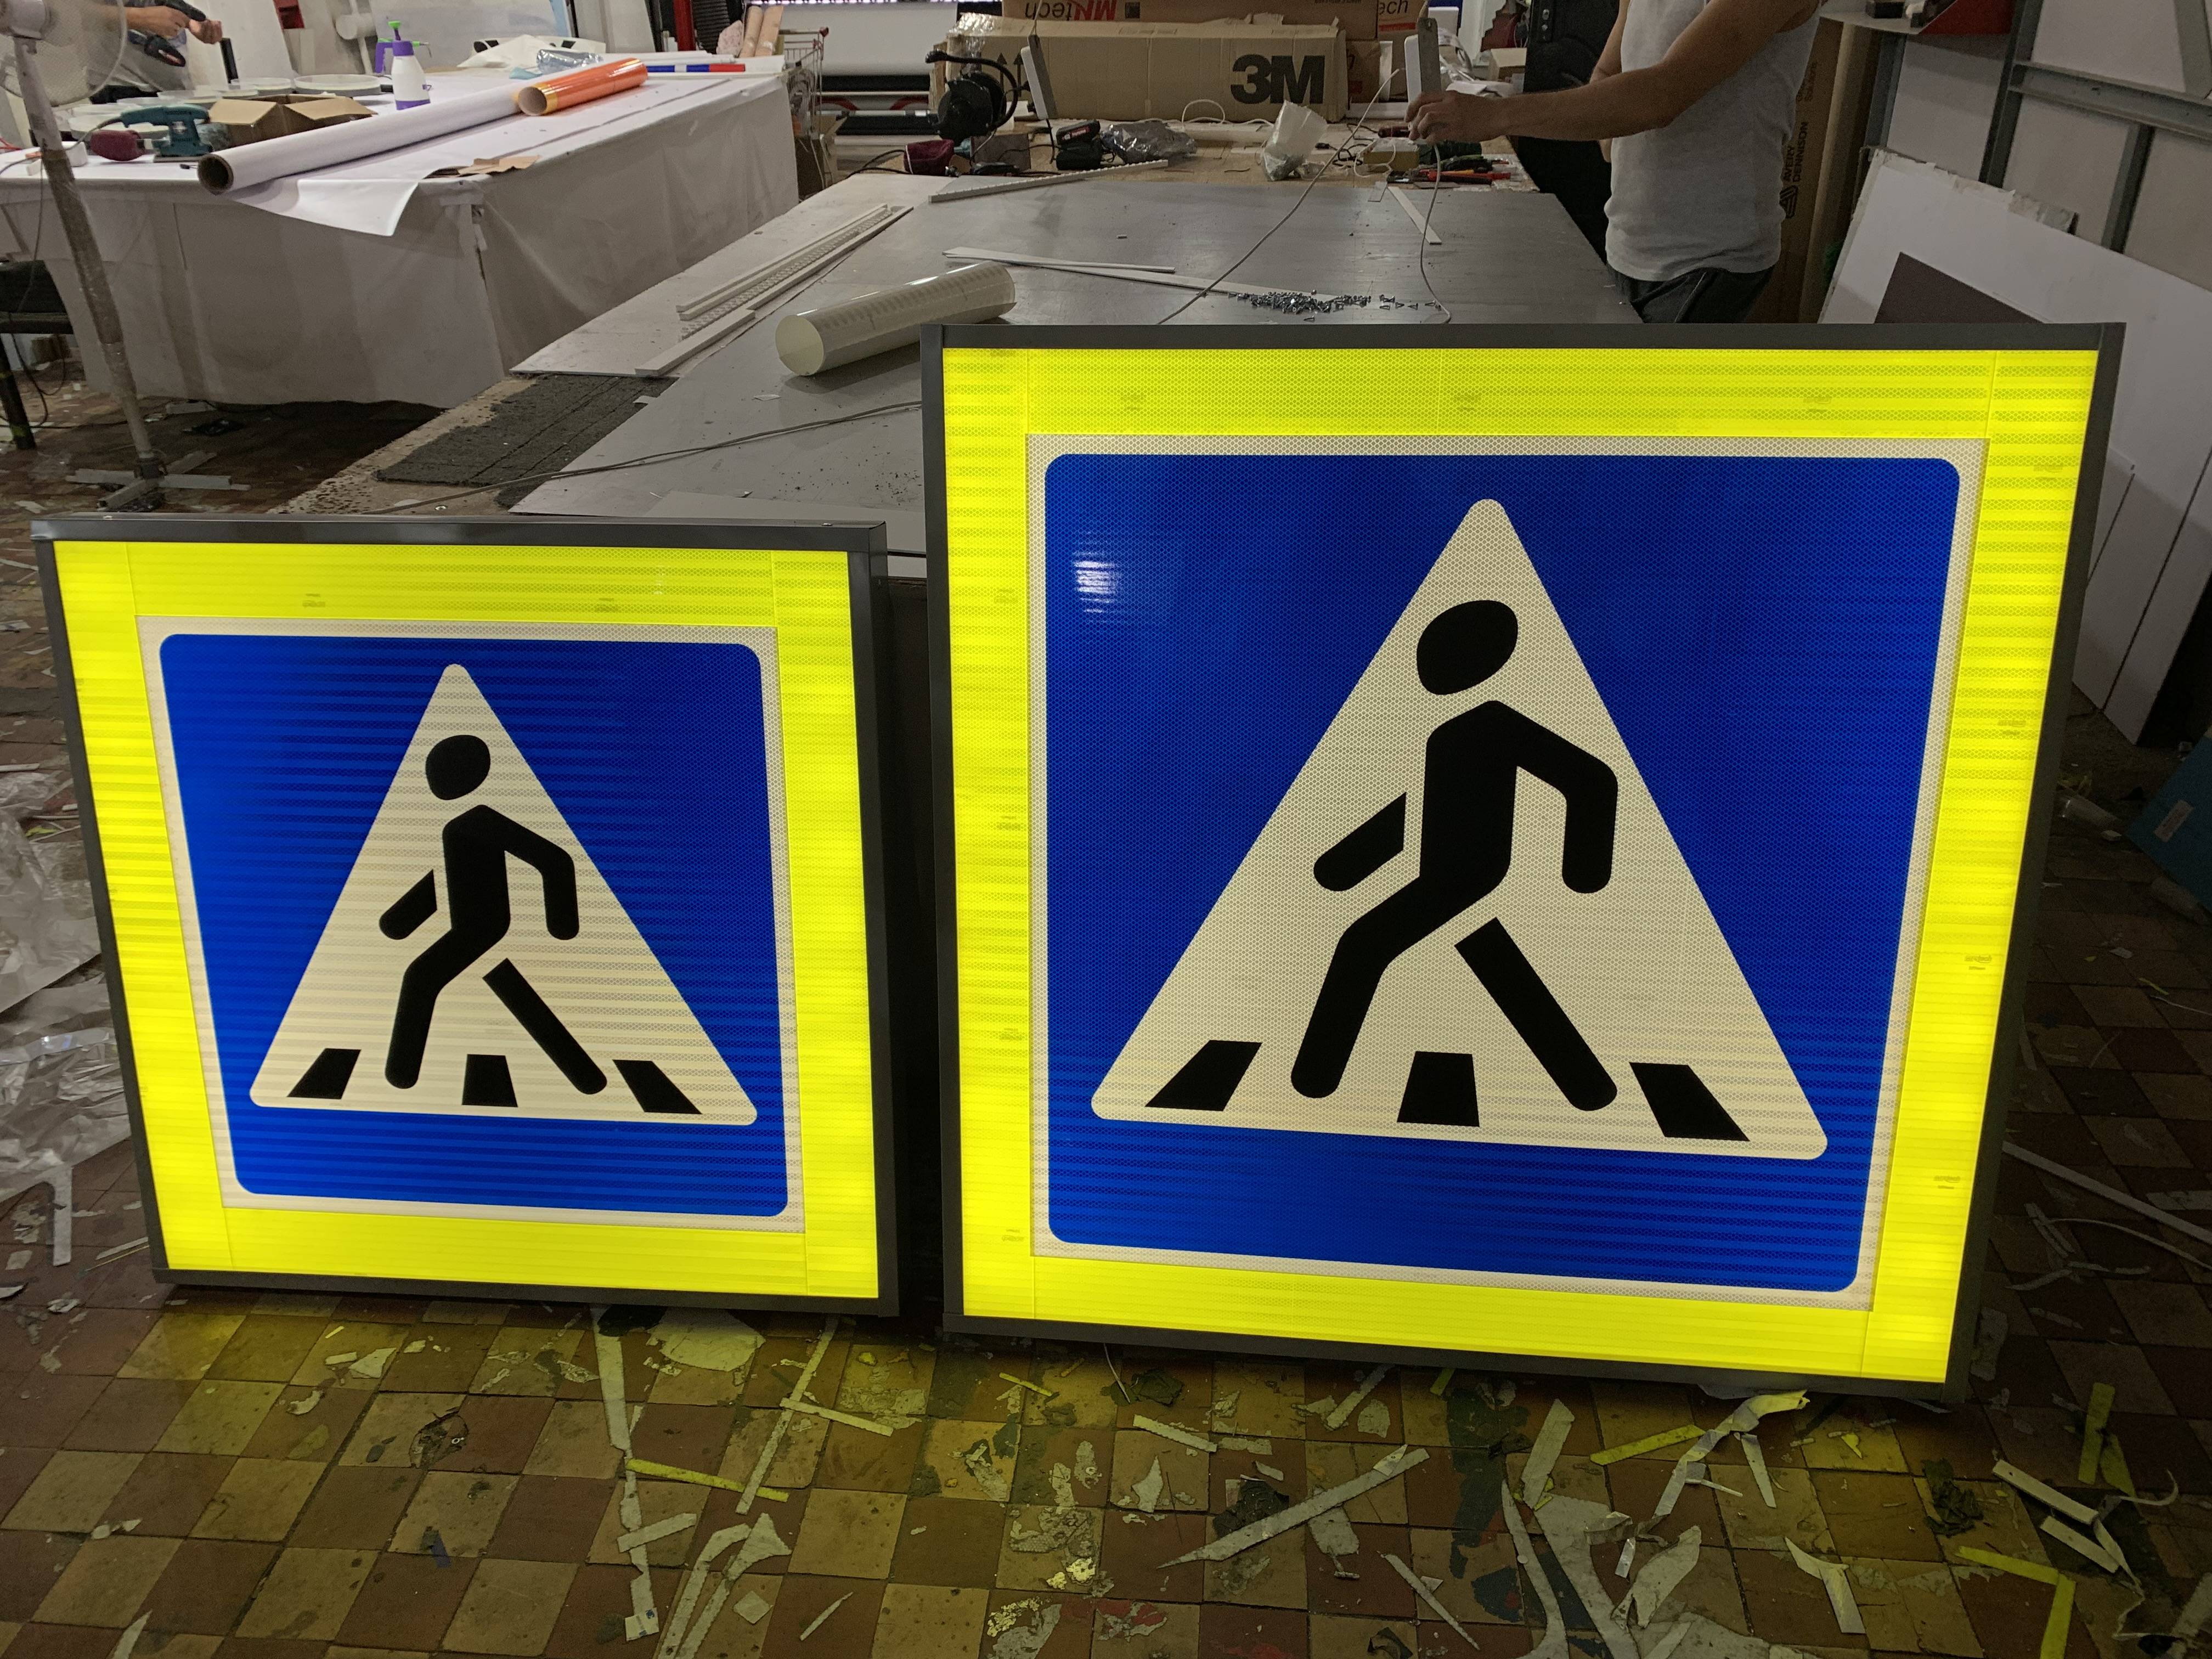 Дорожные знаки для пешеходов — названия, картинки, значение пешеходных знаков дорожного движение